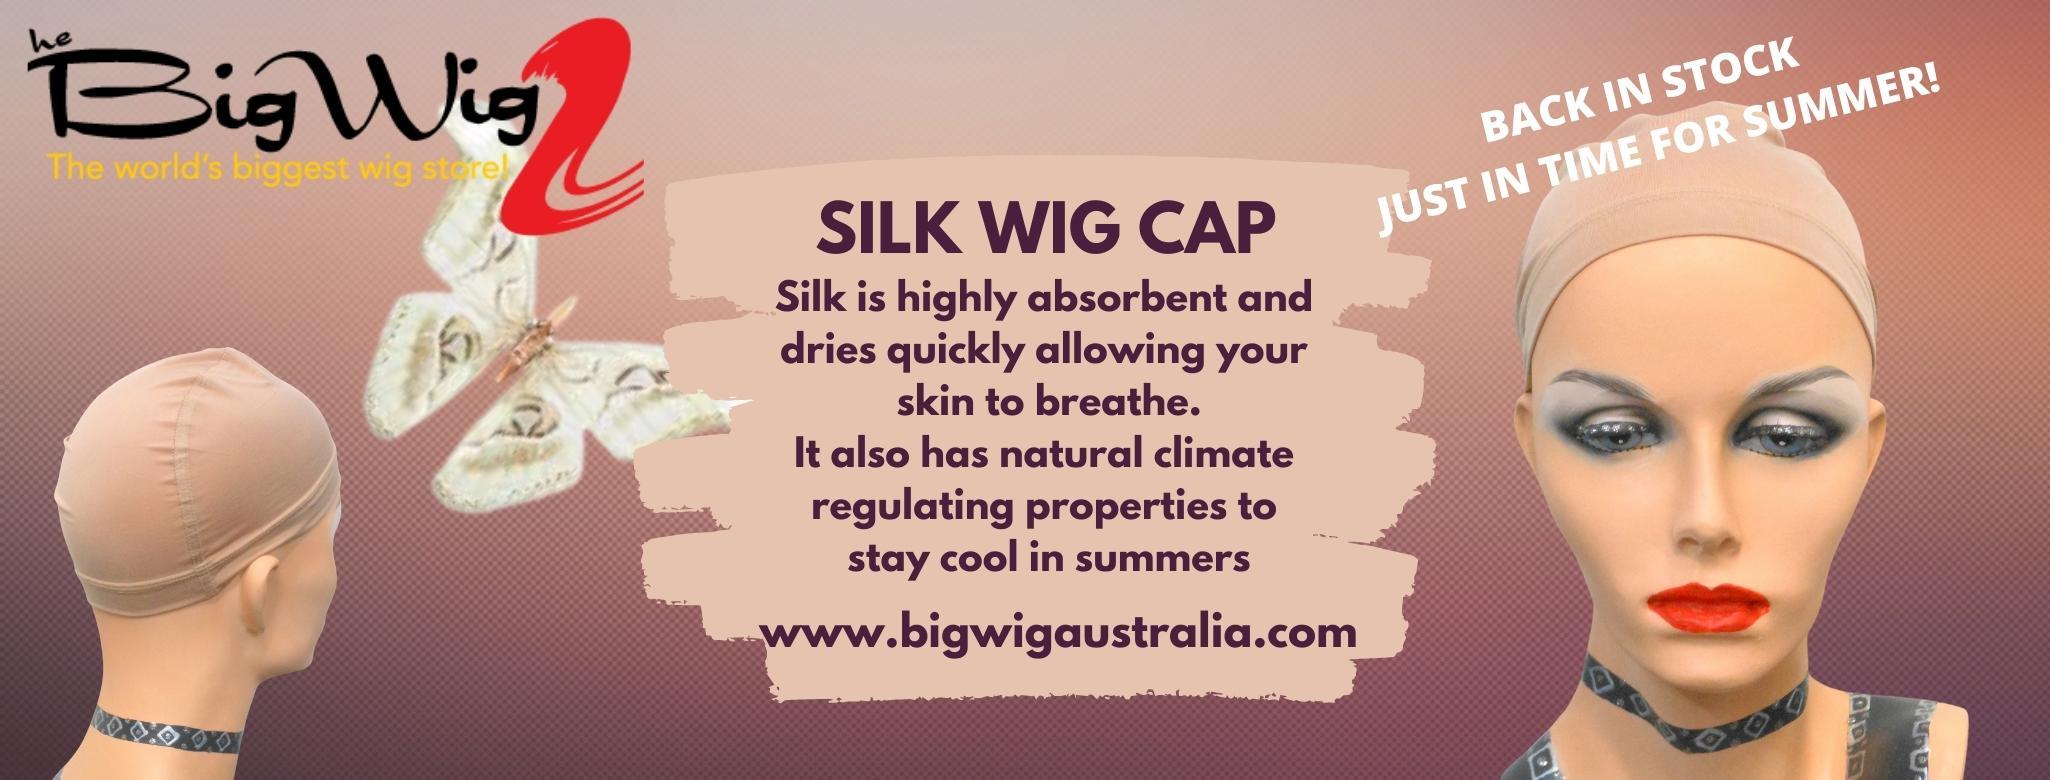 Silk Wig Cap